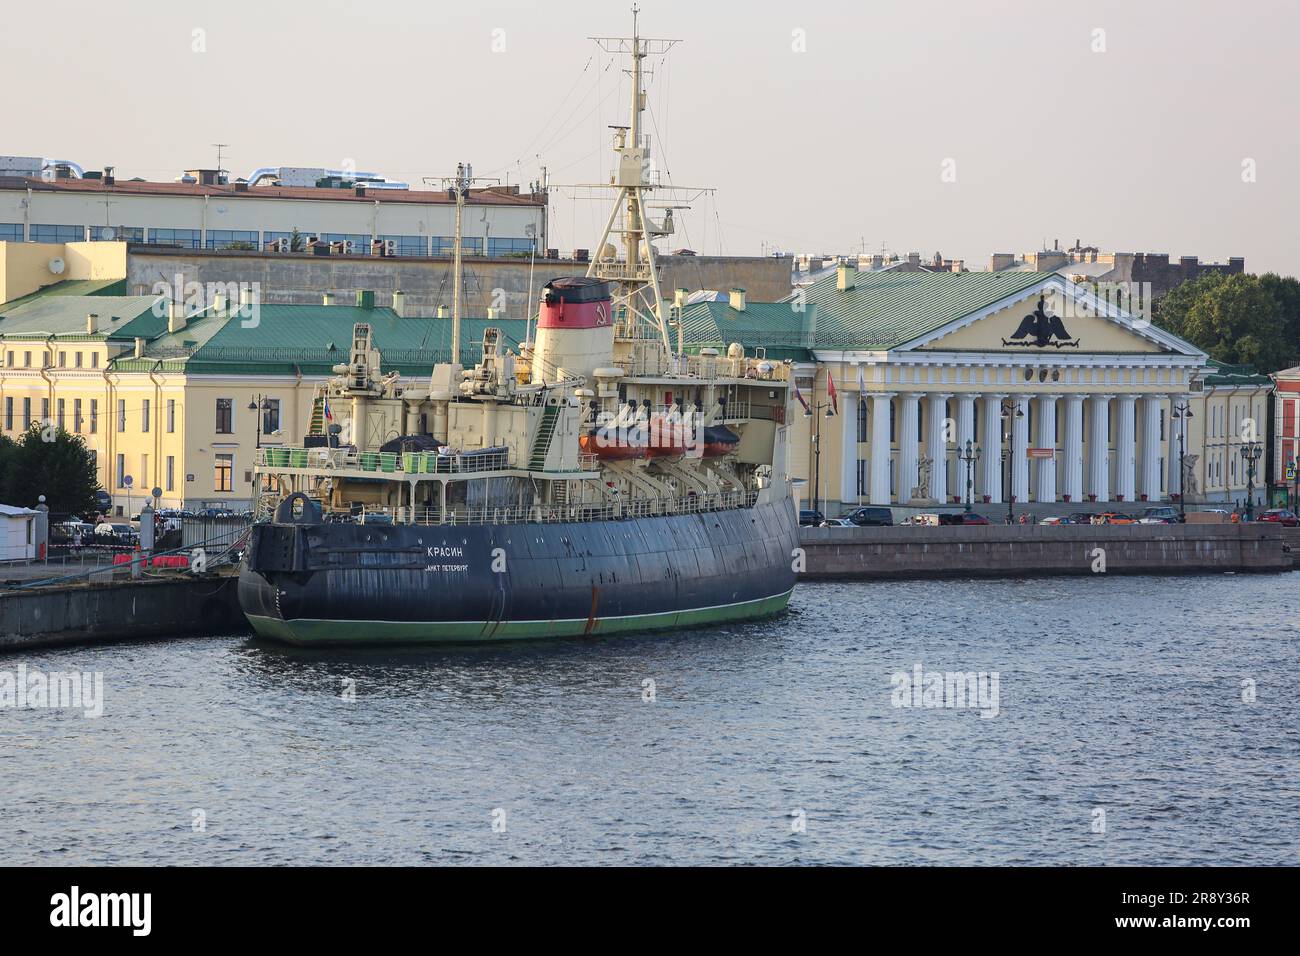 Le brise-glace arctique Krassin de 1916 (marine impériale russe, aujourd'hui navire-musée) et l'Université minière de Saint-Pétersbourg (enseignement technique supérieur russe) Banque D'Images